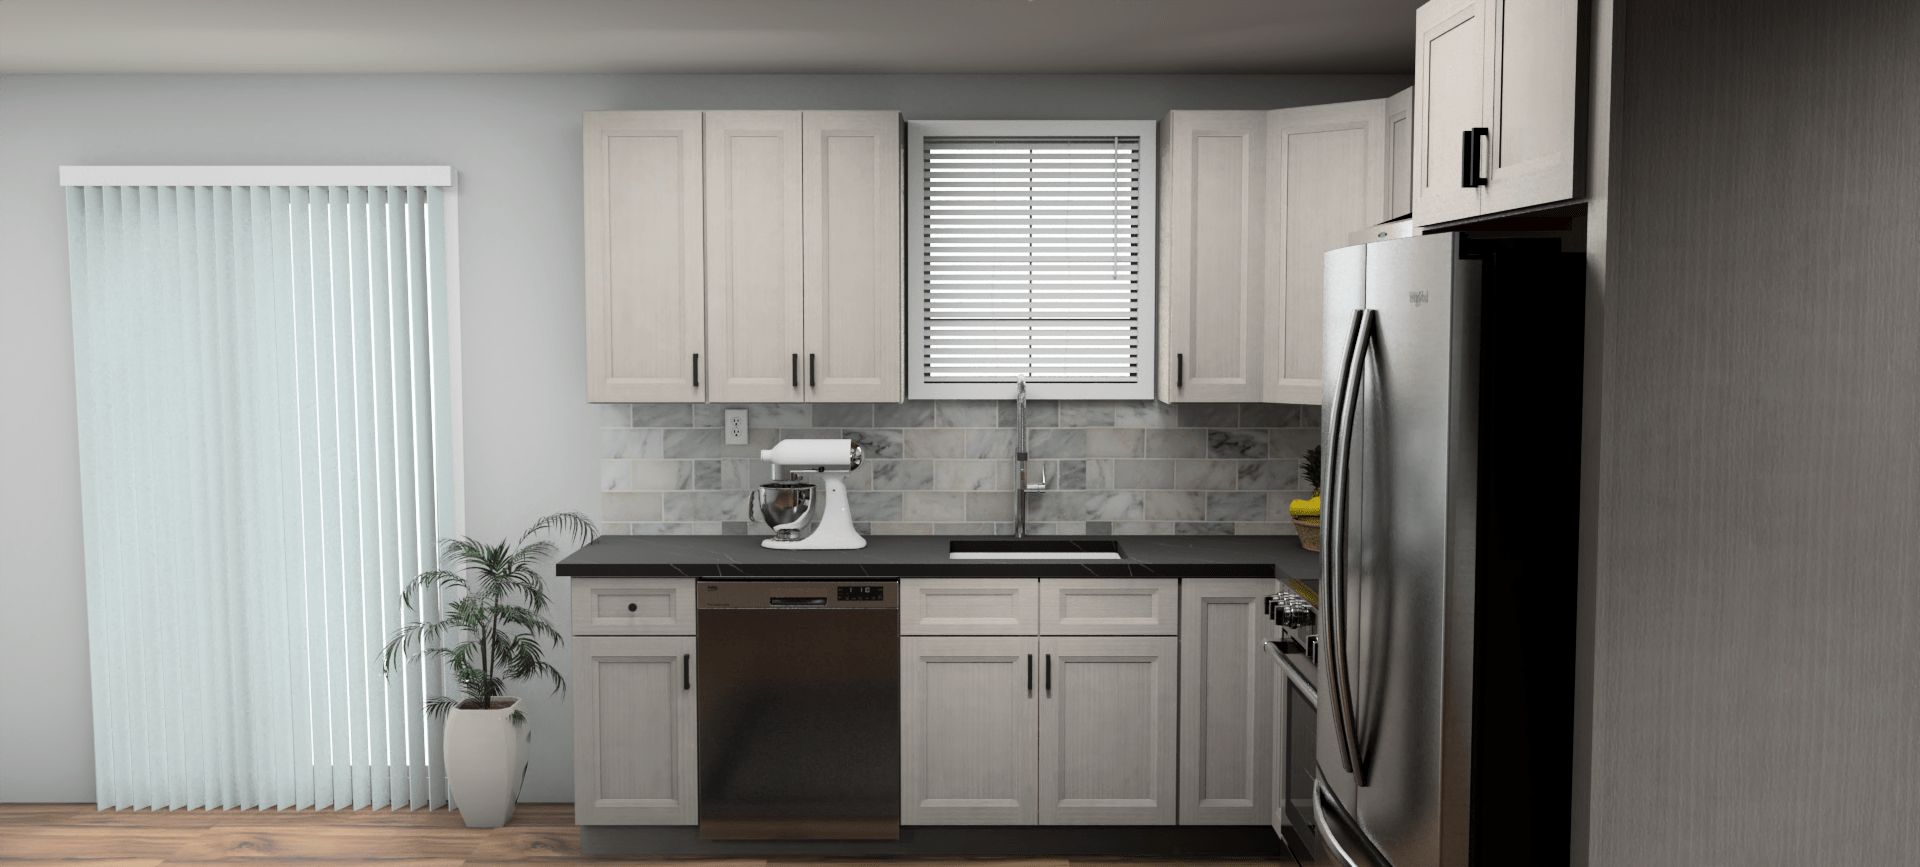 Fabuwood Allure Onyx Horizon 9 x 10 L Shaped Kitchen Side Layout Photo